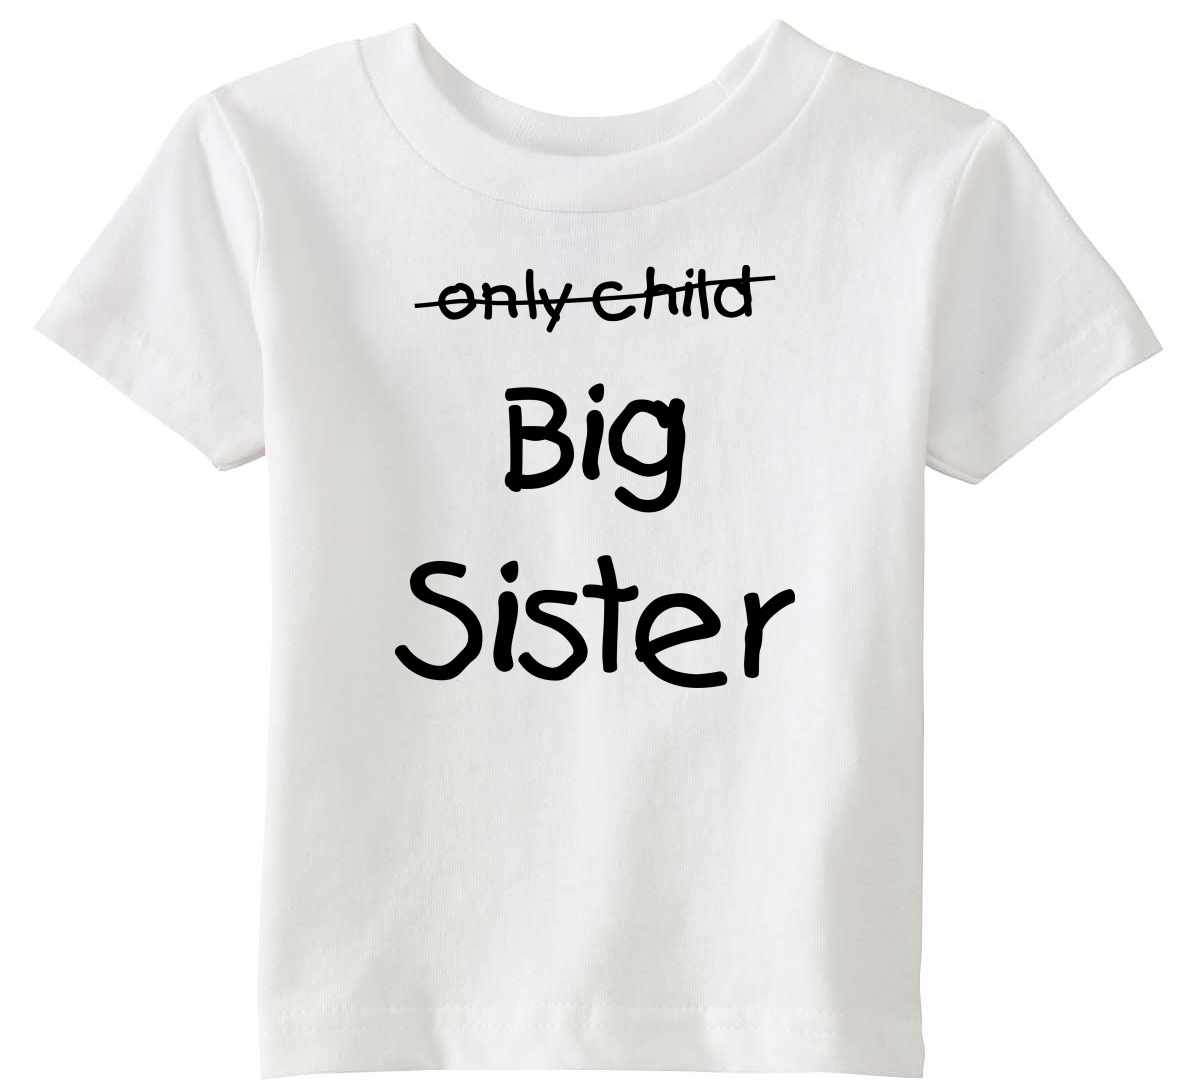 Only Child BIG SISTER Infant/Toddler  (#968-7)